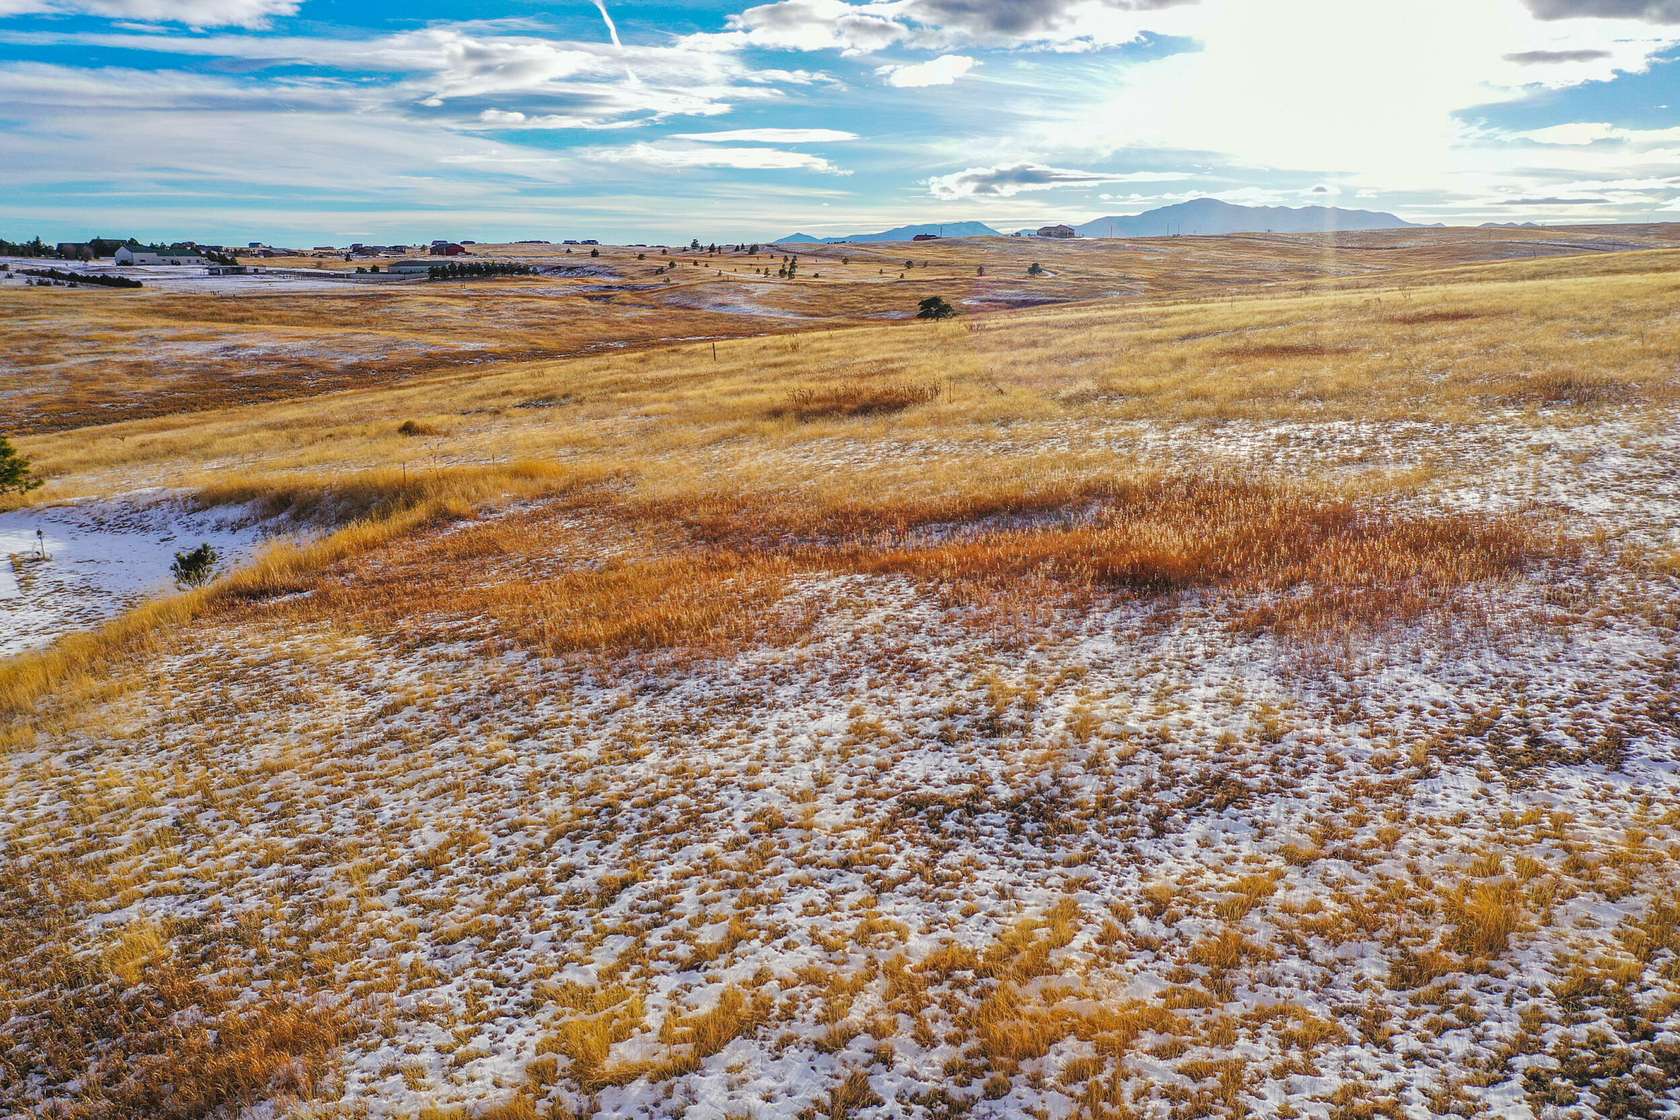 15.3 Acres of Land for Sale in Colorado Springs, Colorado